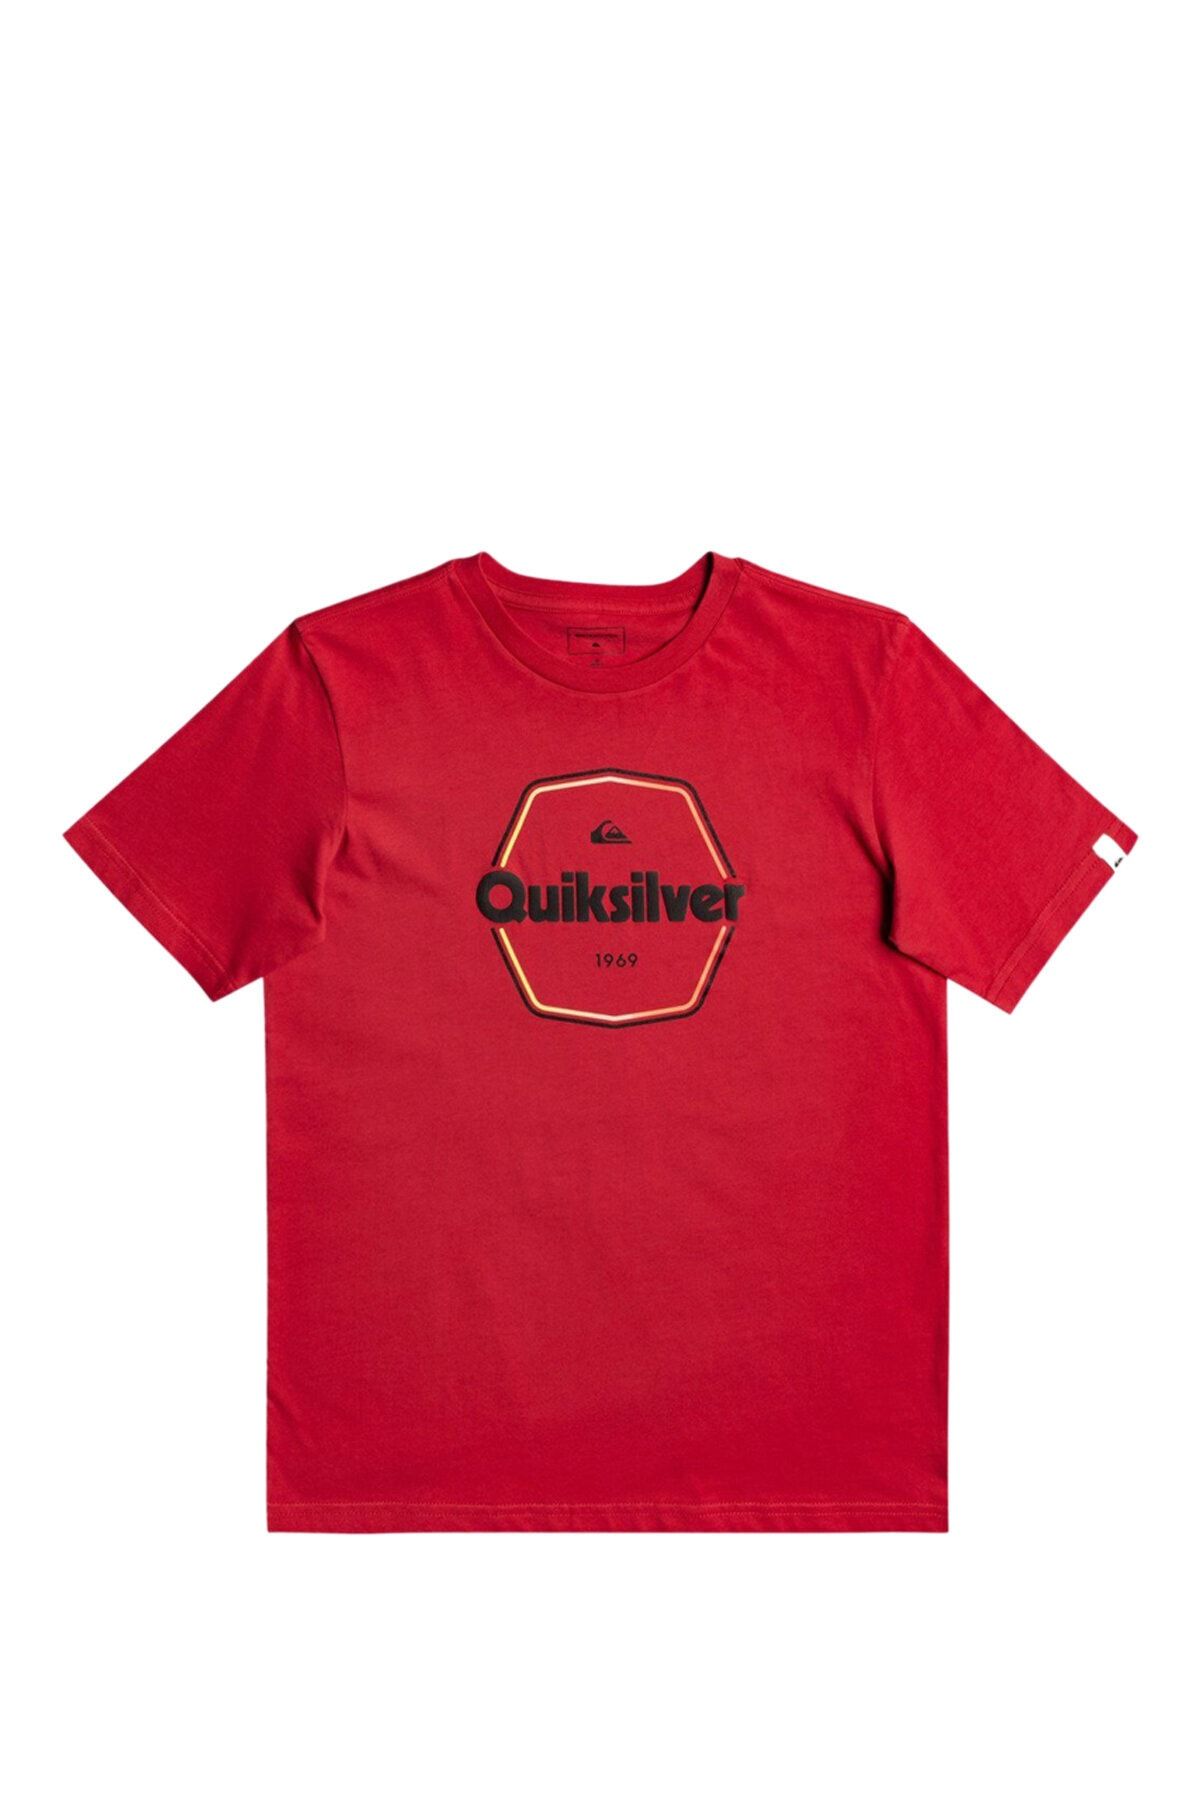 Quiksilver Hard Wıred Ss Yth Erkek Çocuk Kısa Kol T-shirt